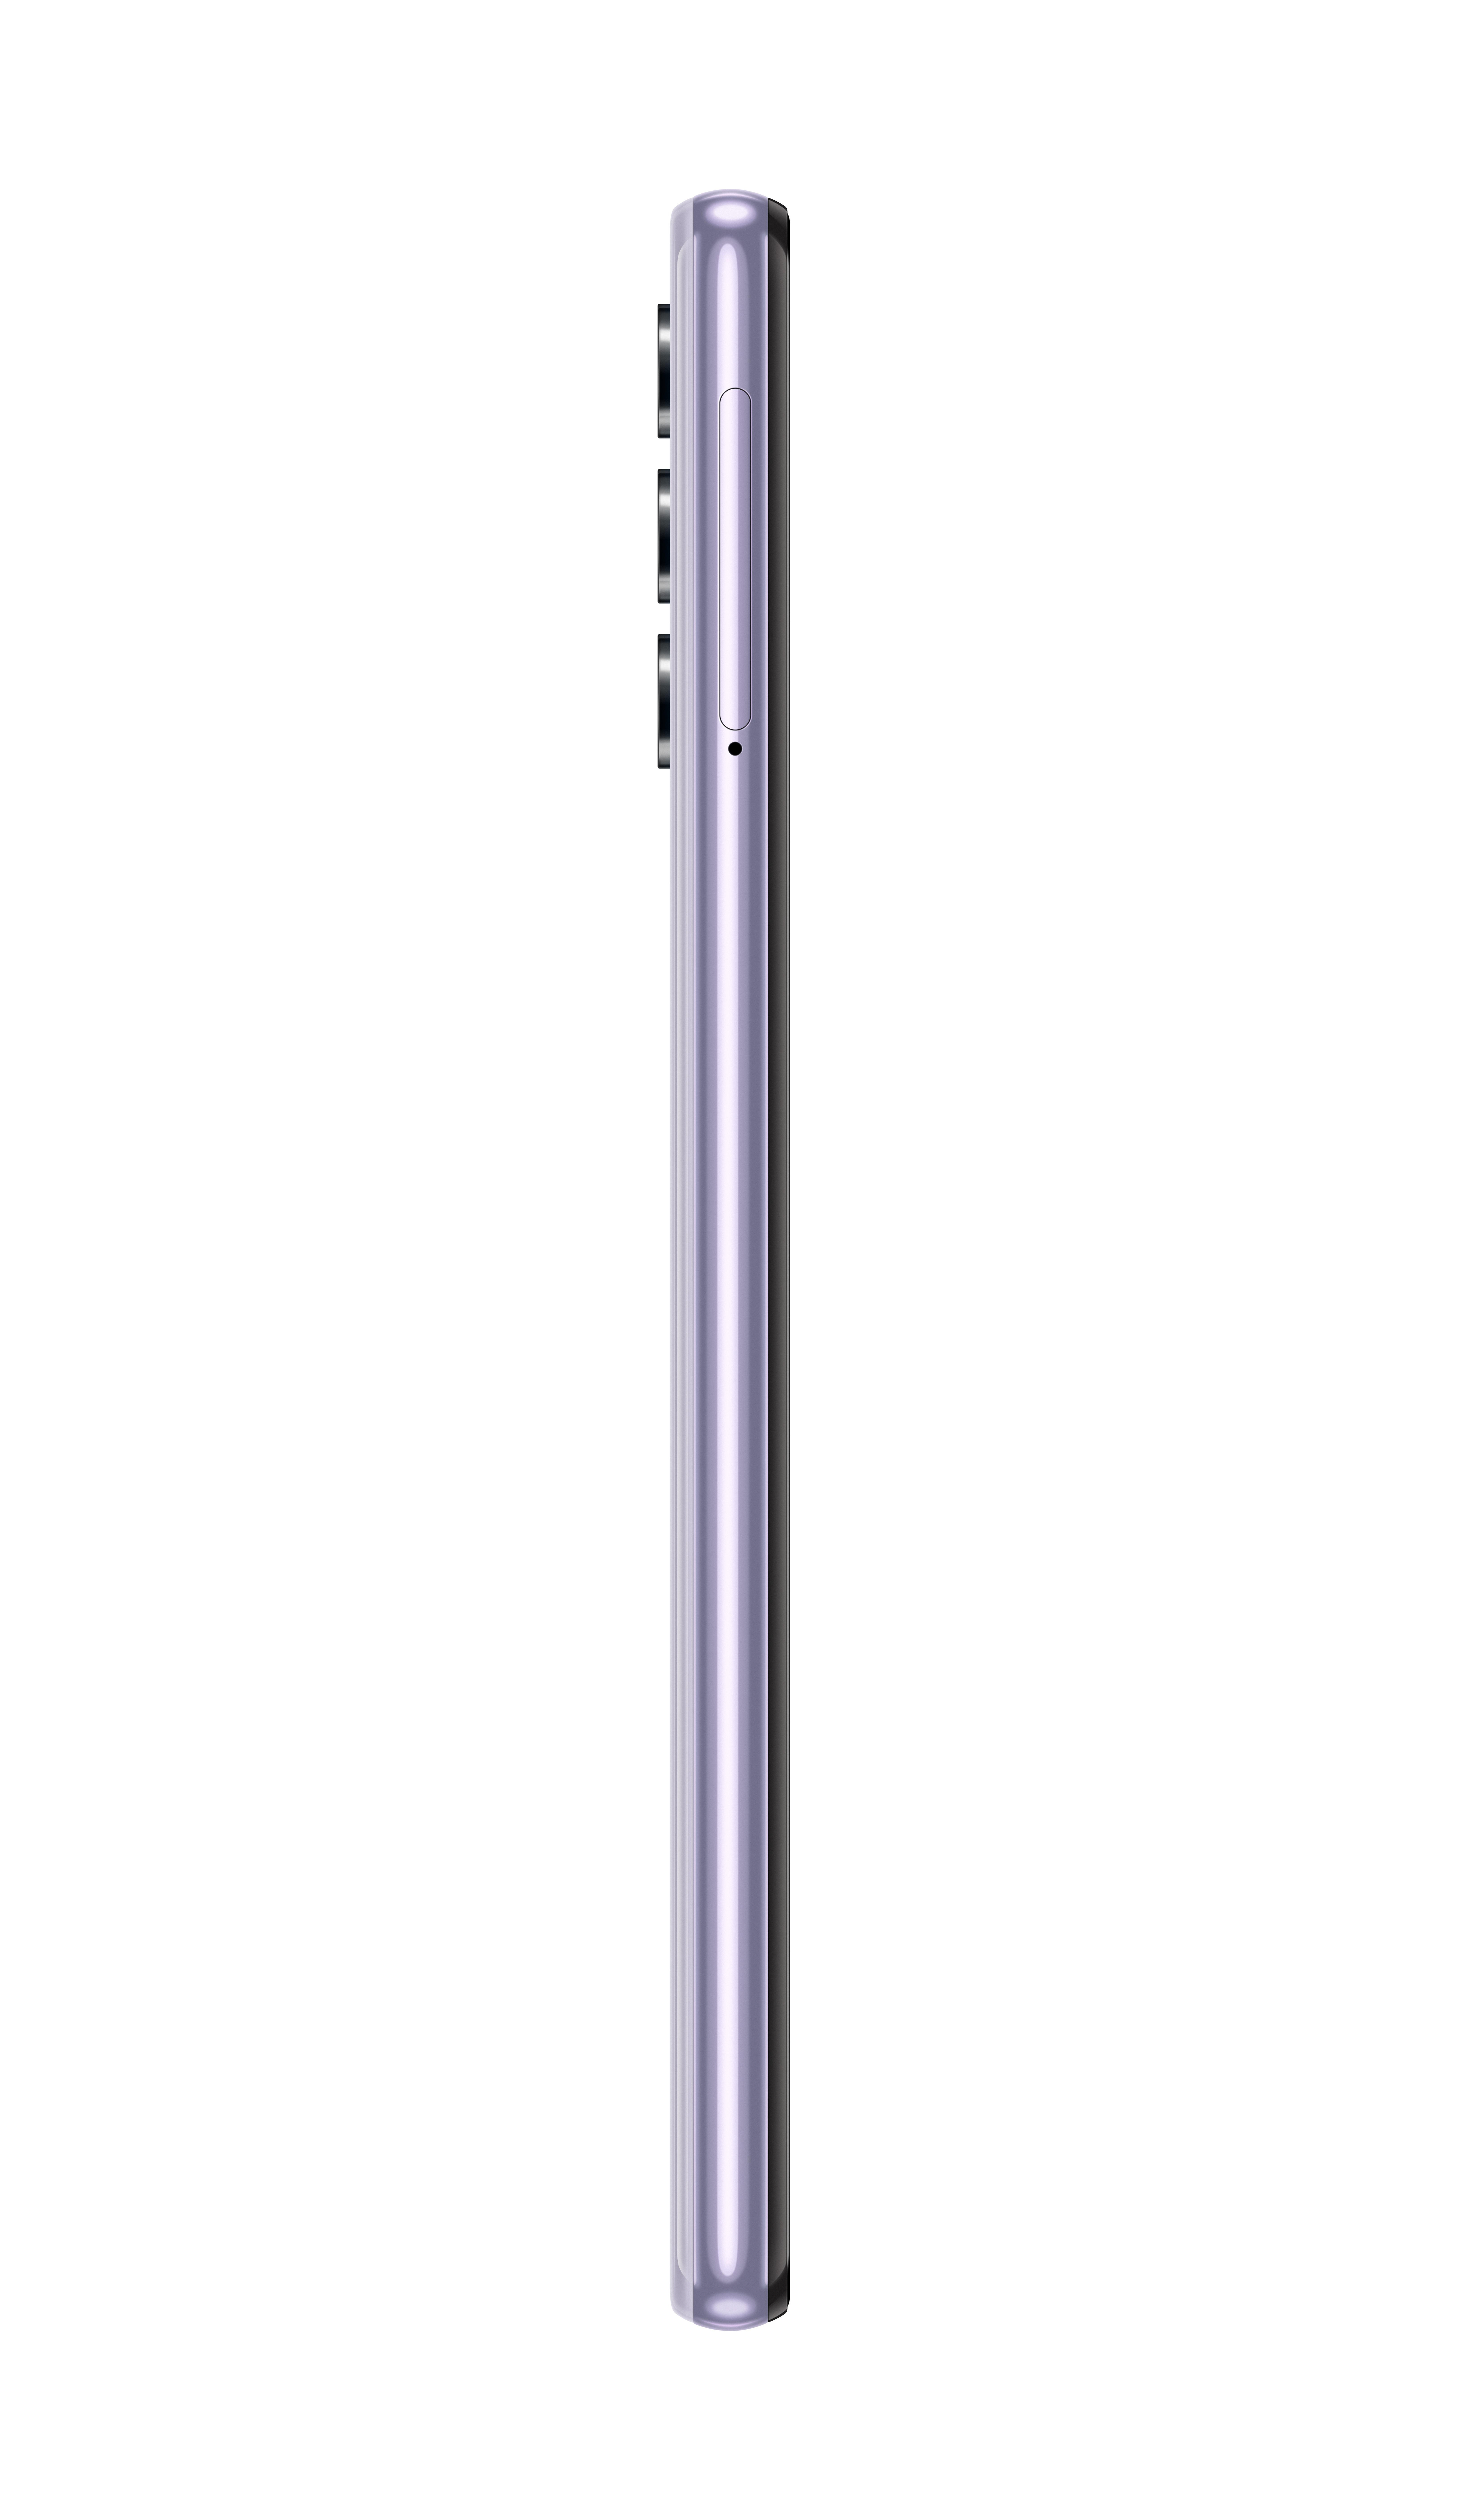 64 SAMSUNG Dual 5G A32 GB Violett SIM Galaxy